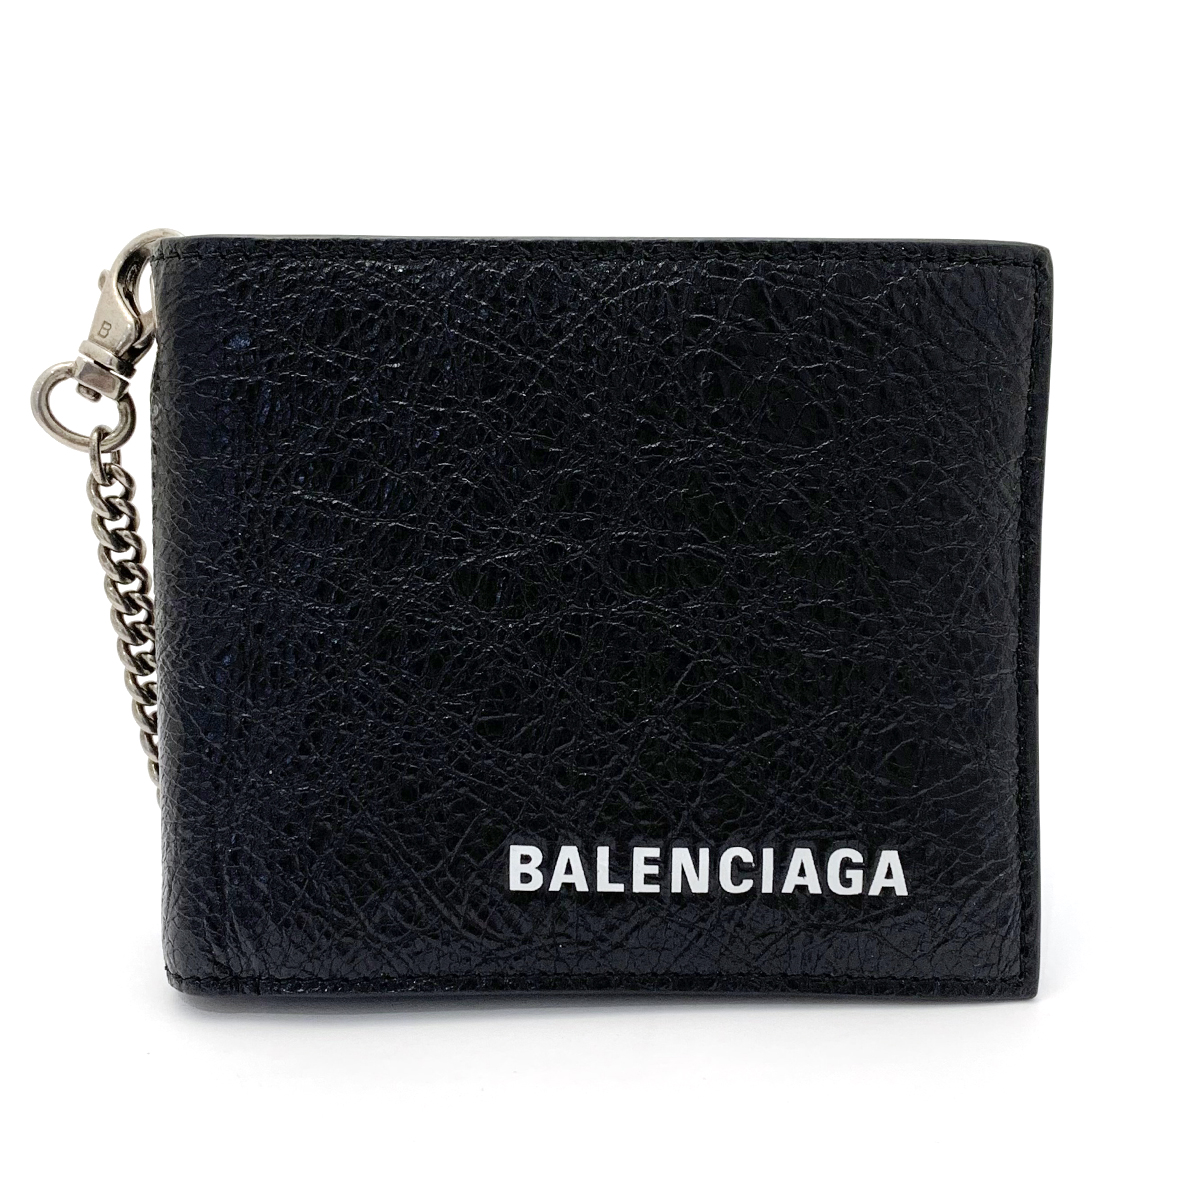 バレンシアガ(BALENCIAGA) 二つ折り財布 504933 レザー ブラック チェーンウォレット 札入れ 小銭入れなし